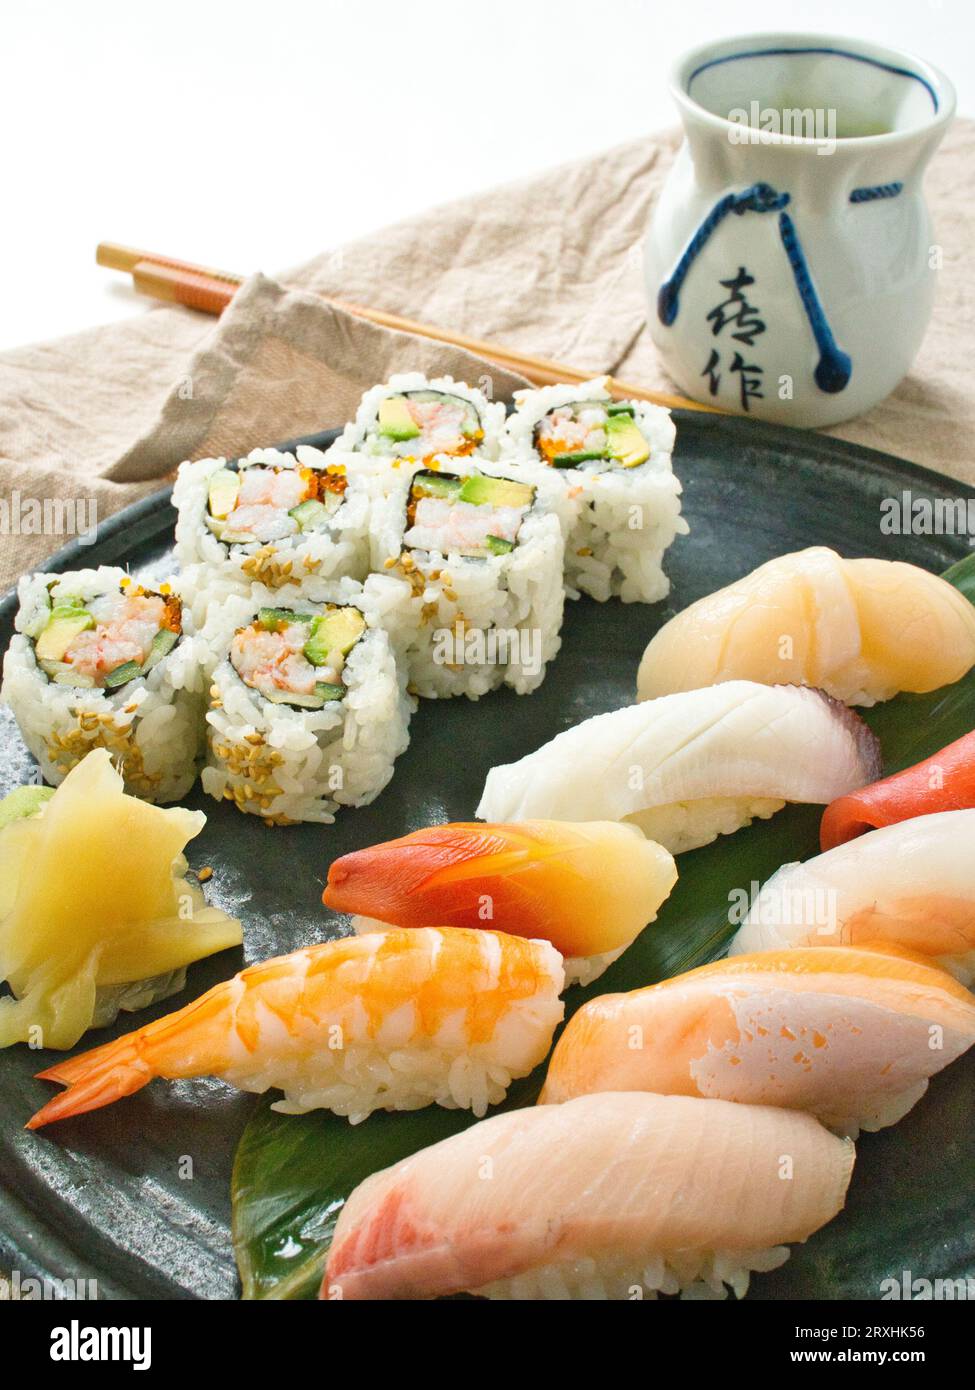 Nigiri sushi with california roll and green tea. Stock Photo